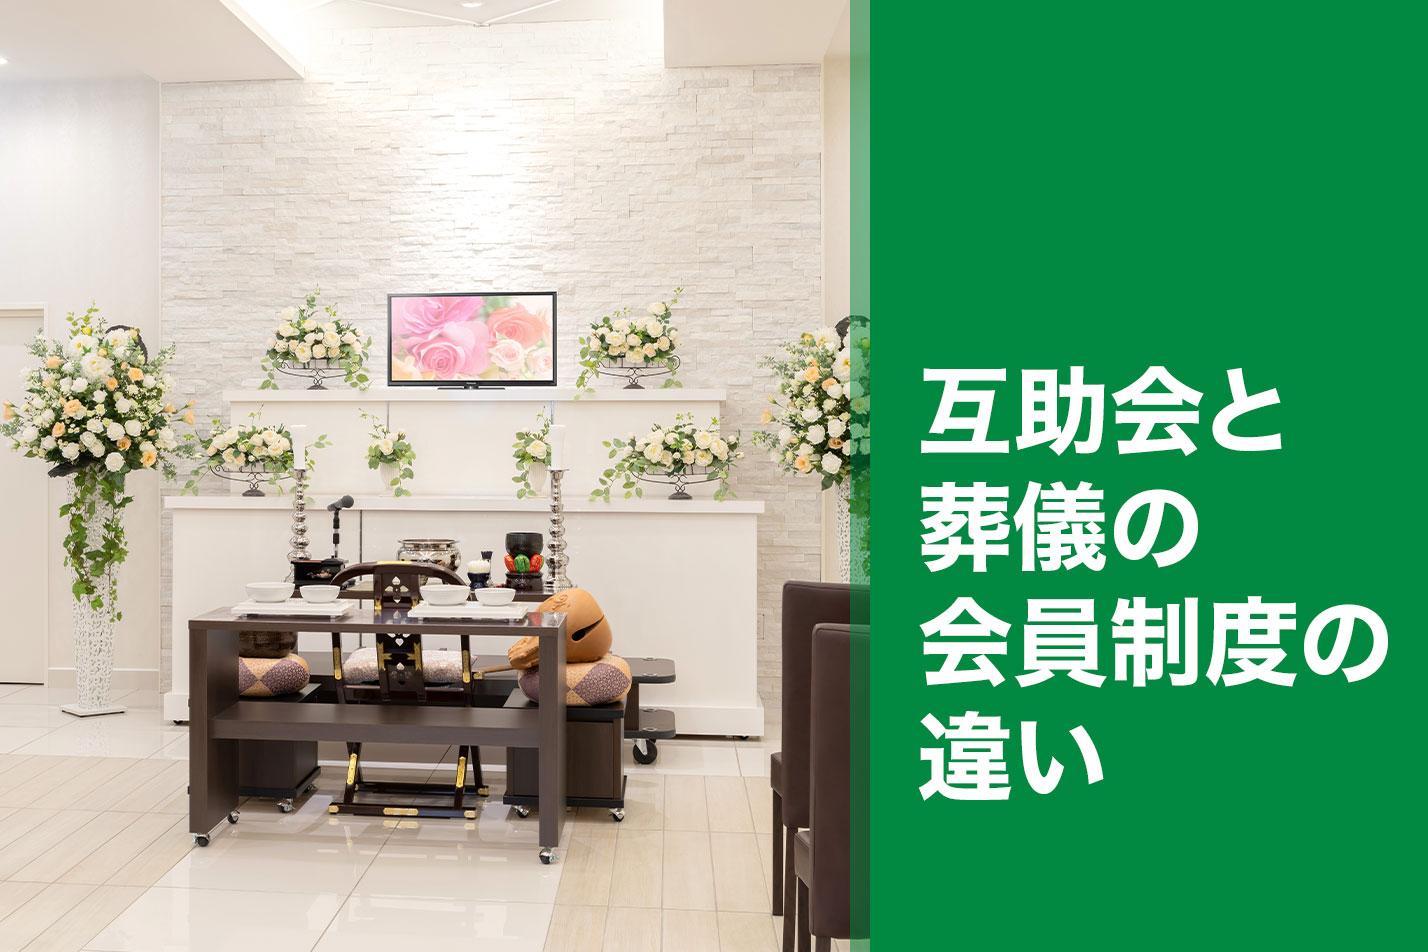 【磐田市】互助会と葬儀の会員制度の違いのイメージ画像